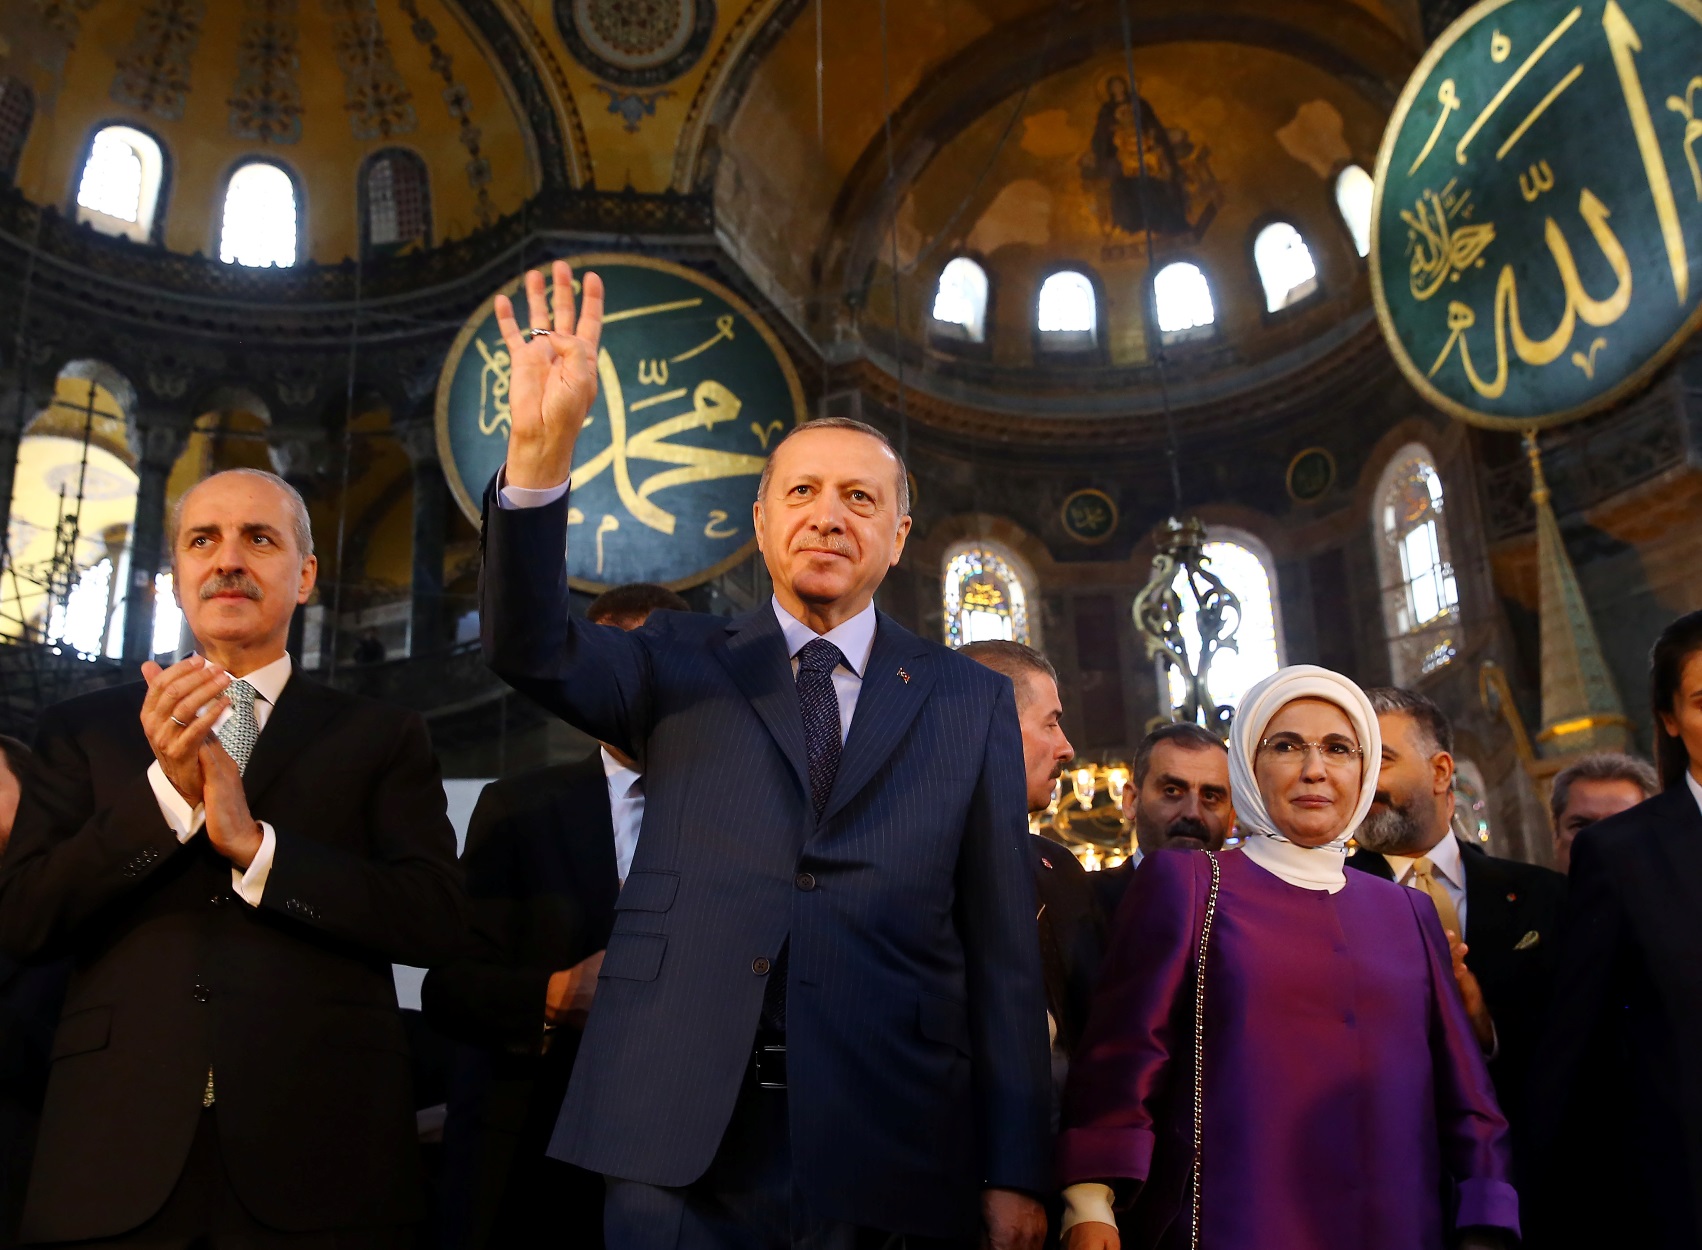 Τουρκία: «Σπάσαμε τα δεσμά με την μετατροπή της Αγίας Σοφίας σε τζαμί», είπε ο Ρετζέπ Ταγίπ Ερντογάν